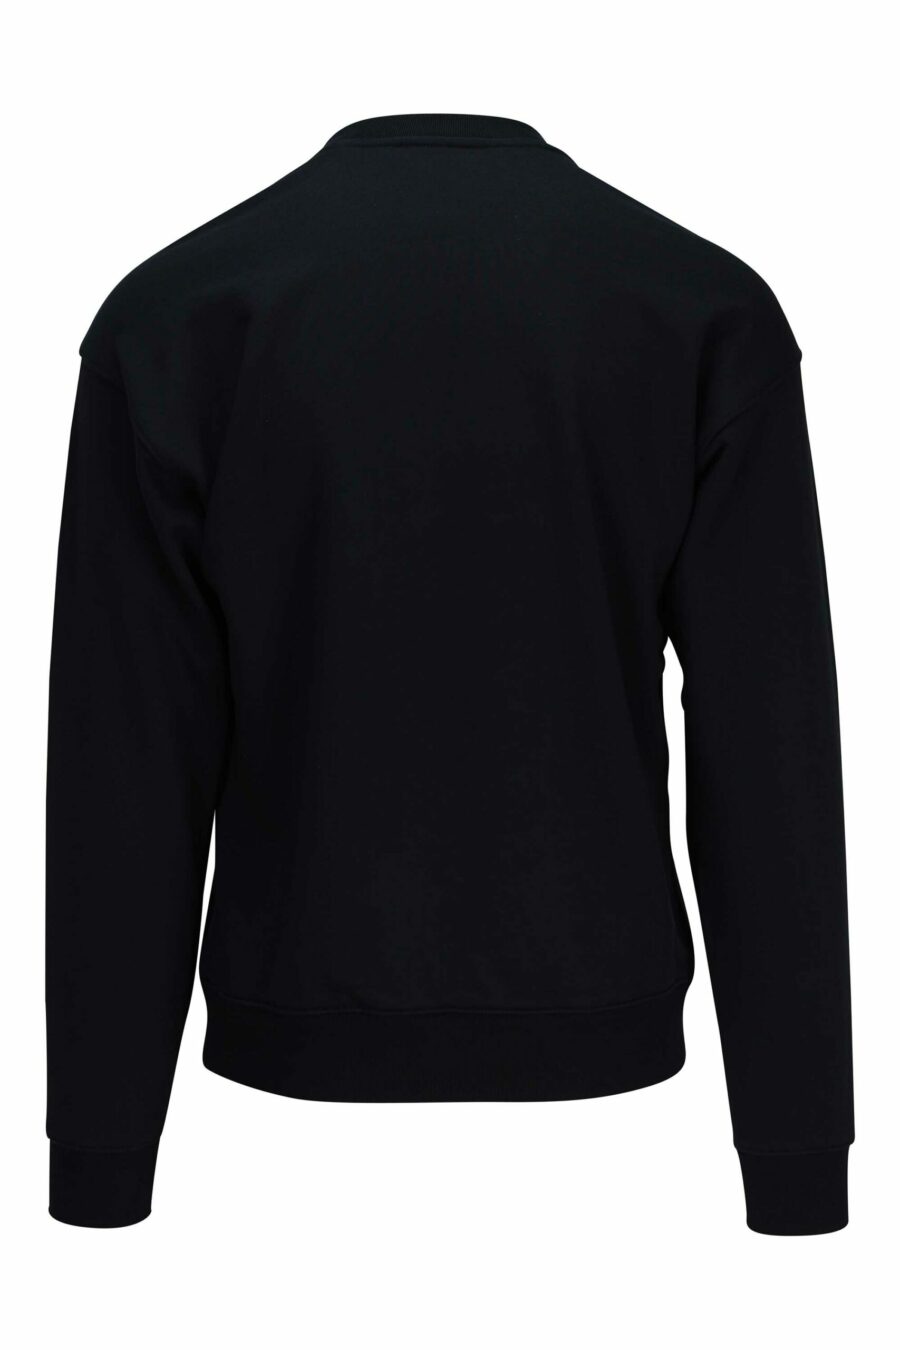 Schwarzes Sweatshirt mit gesticktem Maxilogo mit orangefarbenen Details - 667113148151 1 skaliert